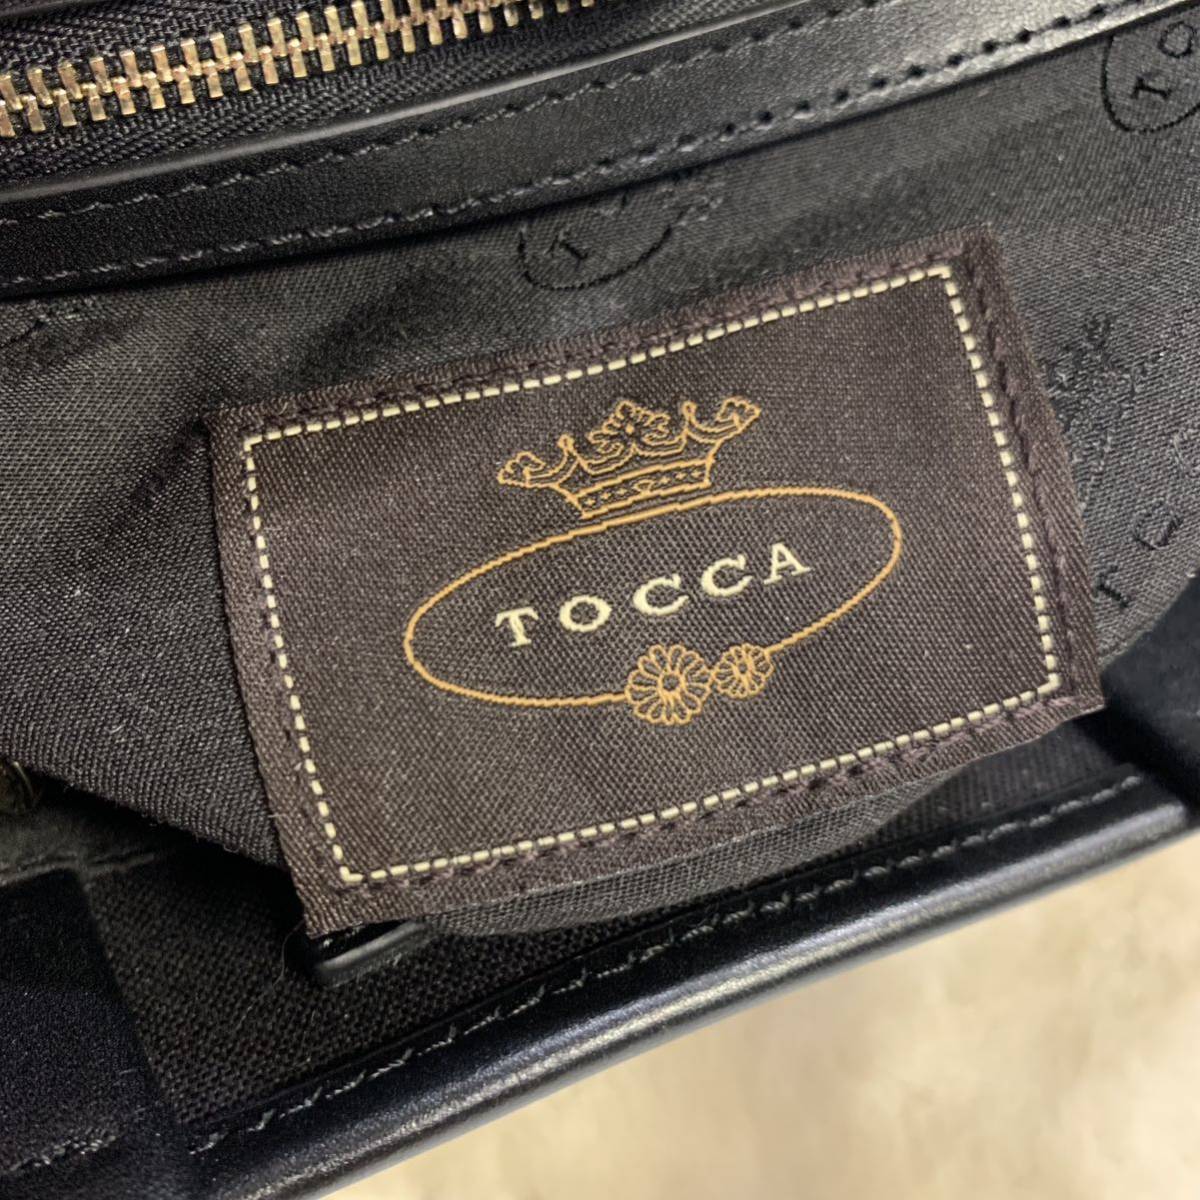  превосходный товар TOCCA Tocca парусина 2way ручная сумочка плечо 